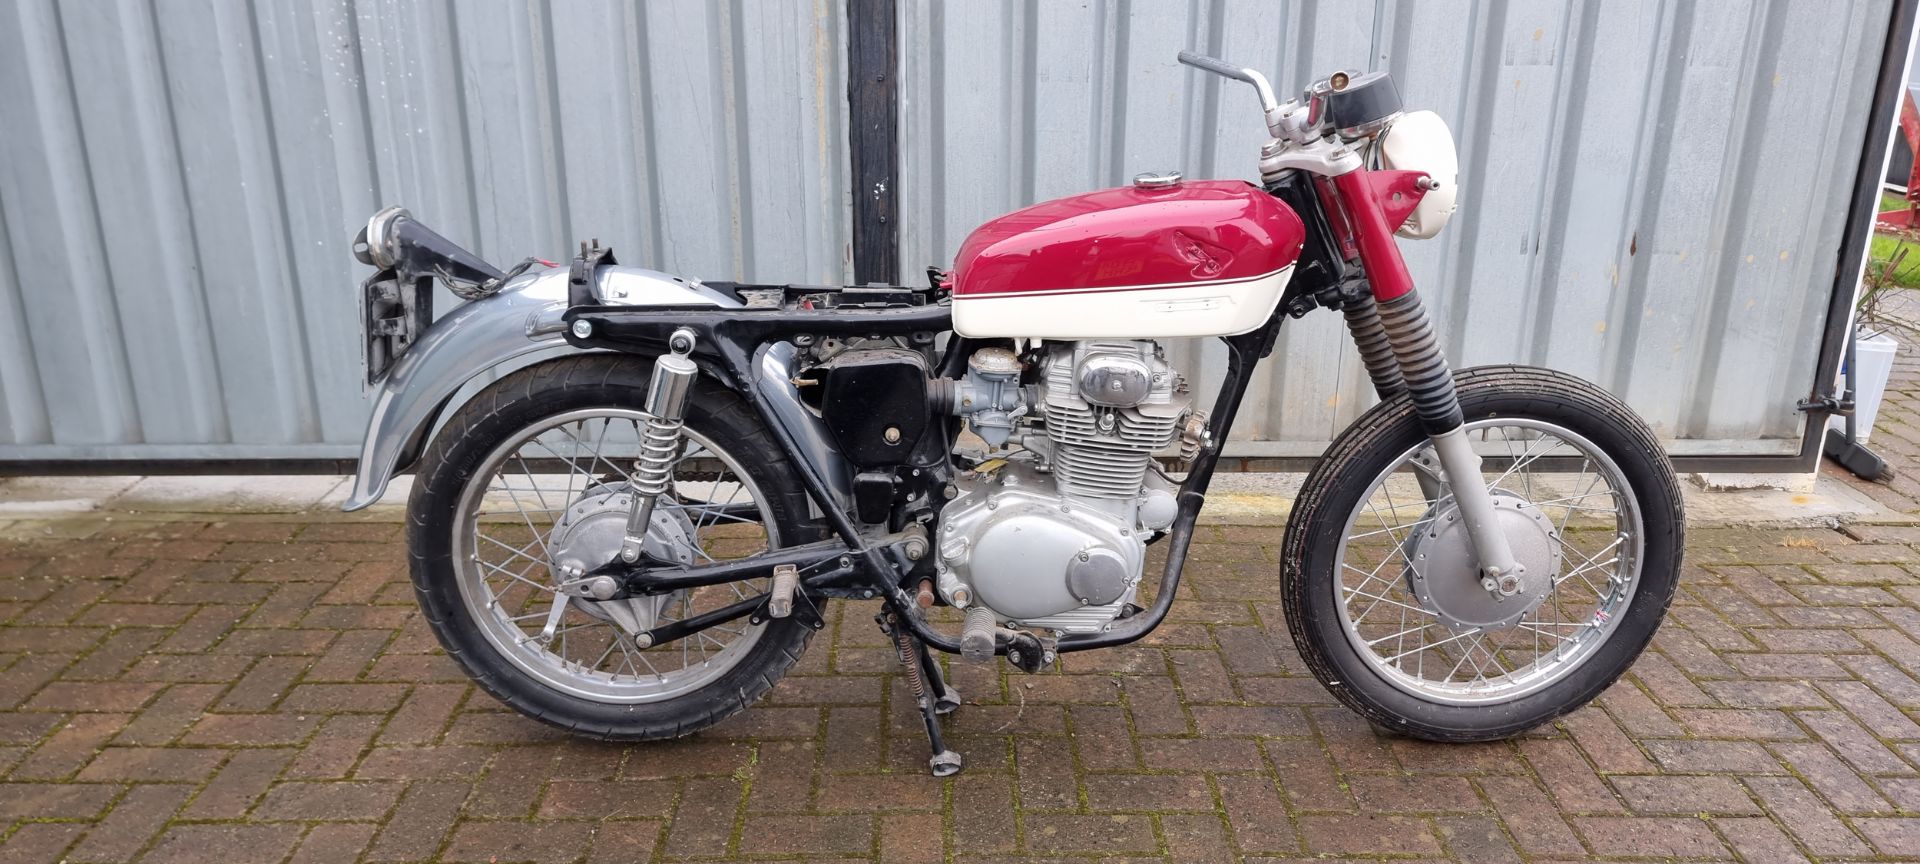 1973 Honda CB250 K4, 249cc, project. Registration number PGL 239L. Frame number CB250 5028152. - Image 2 of 9